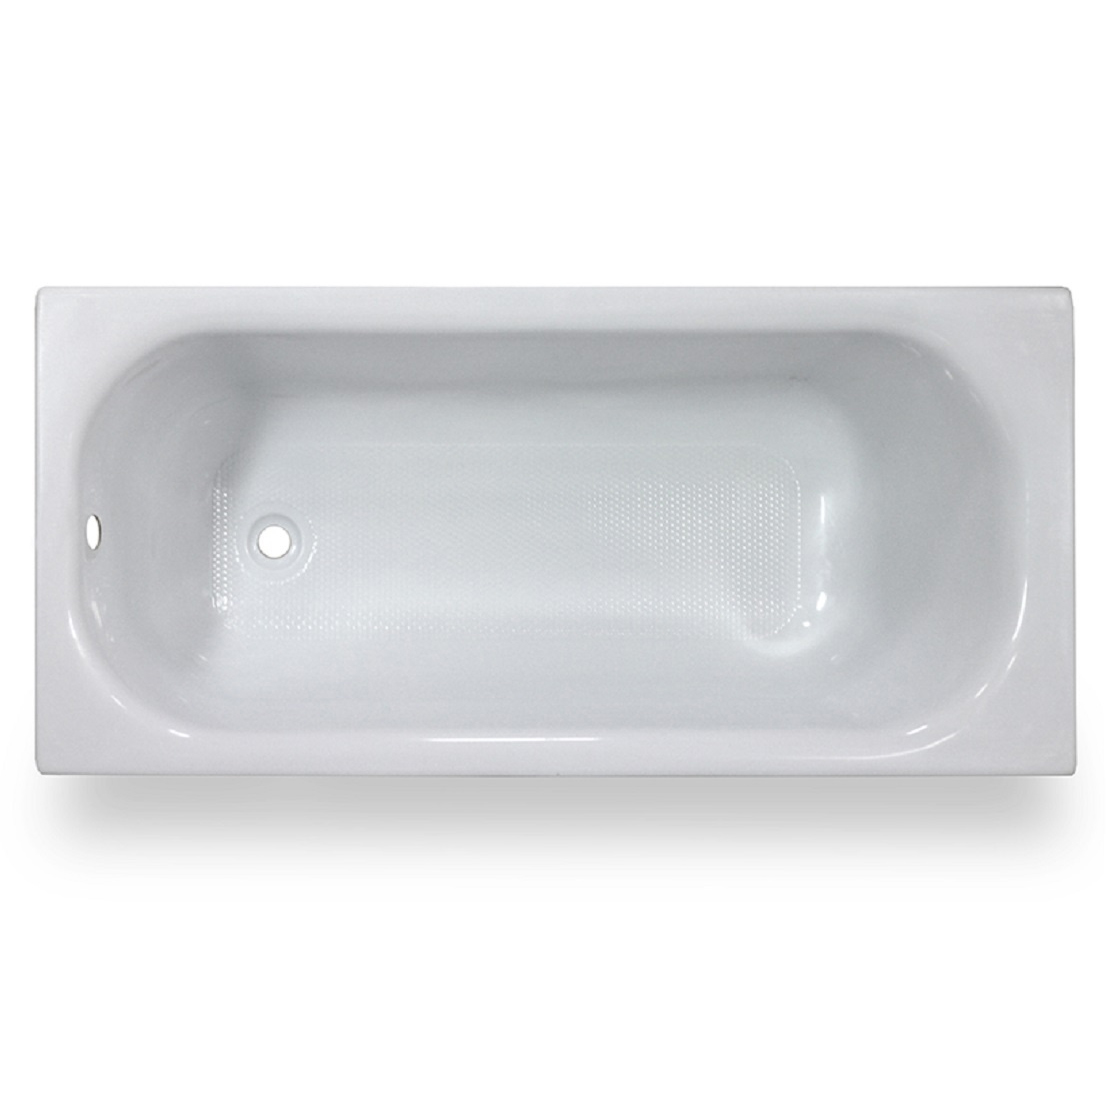 Акриловая ванна Тритон Ультра 170, цвет белый Щ0000013002 - фото 1